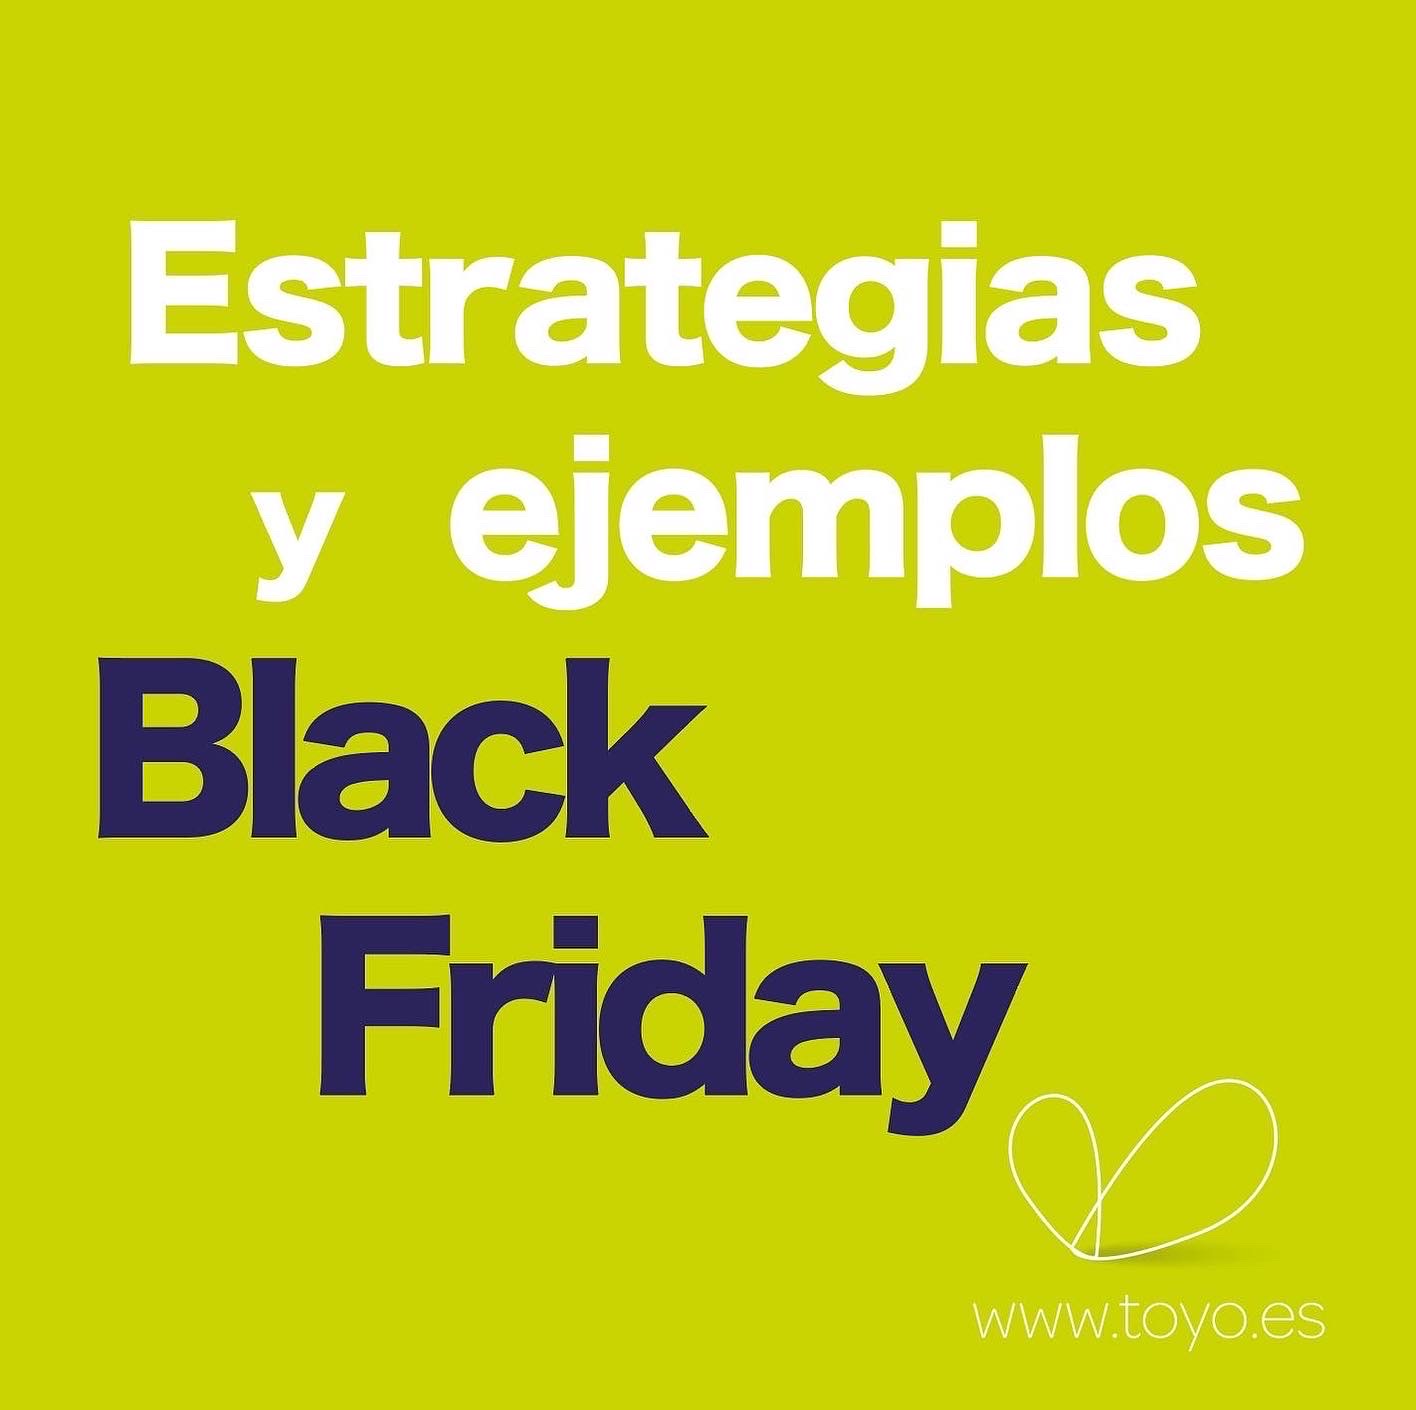 Black Friday estrategias y ejemplos